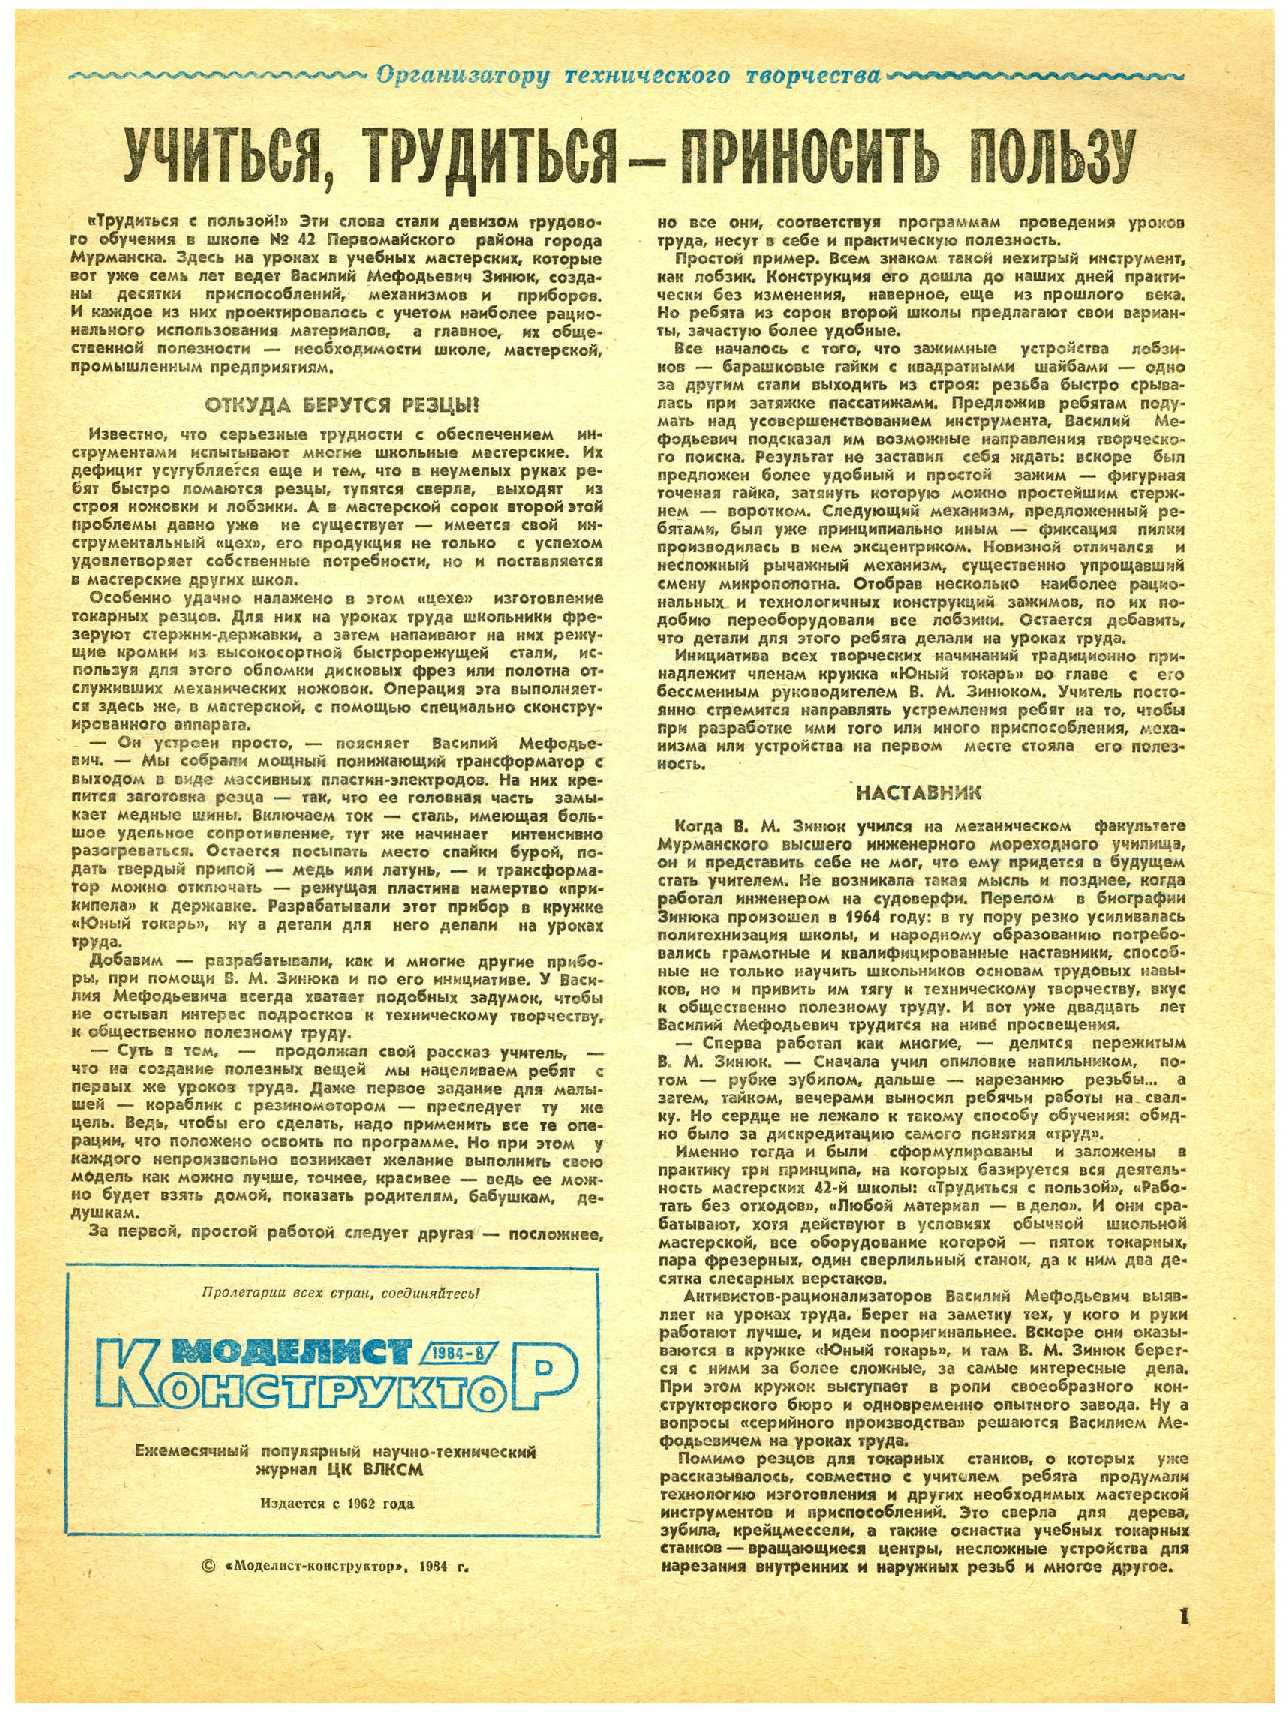 МК 8, 1984, 1 c.